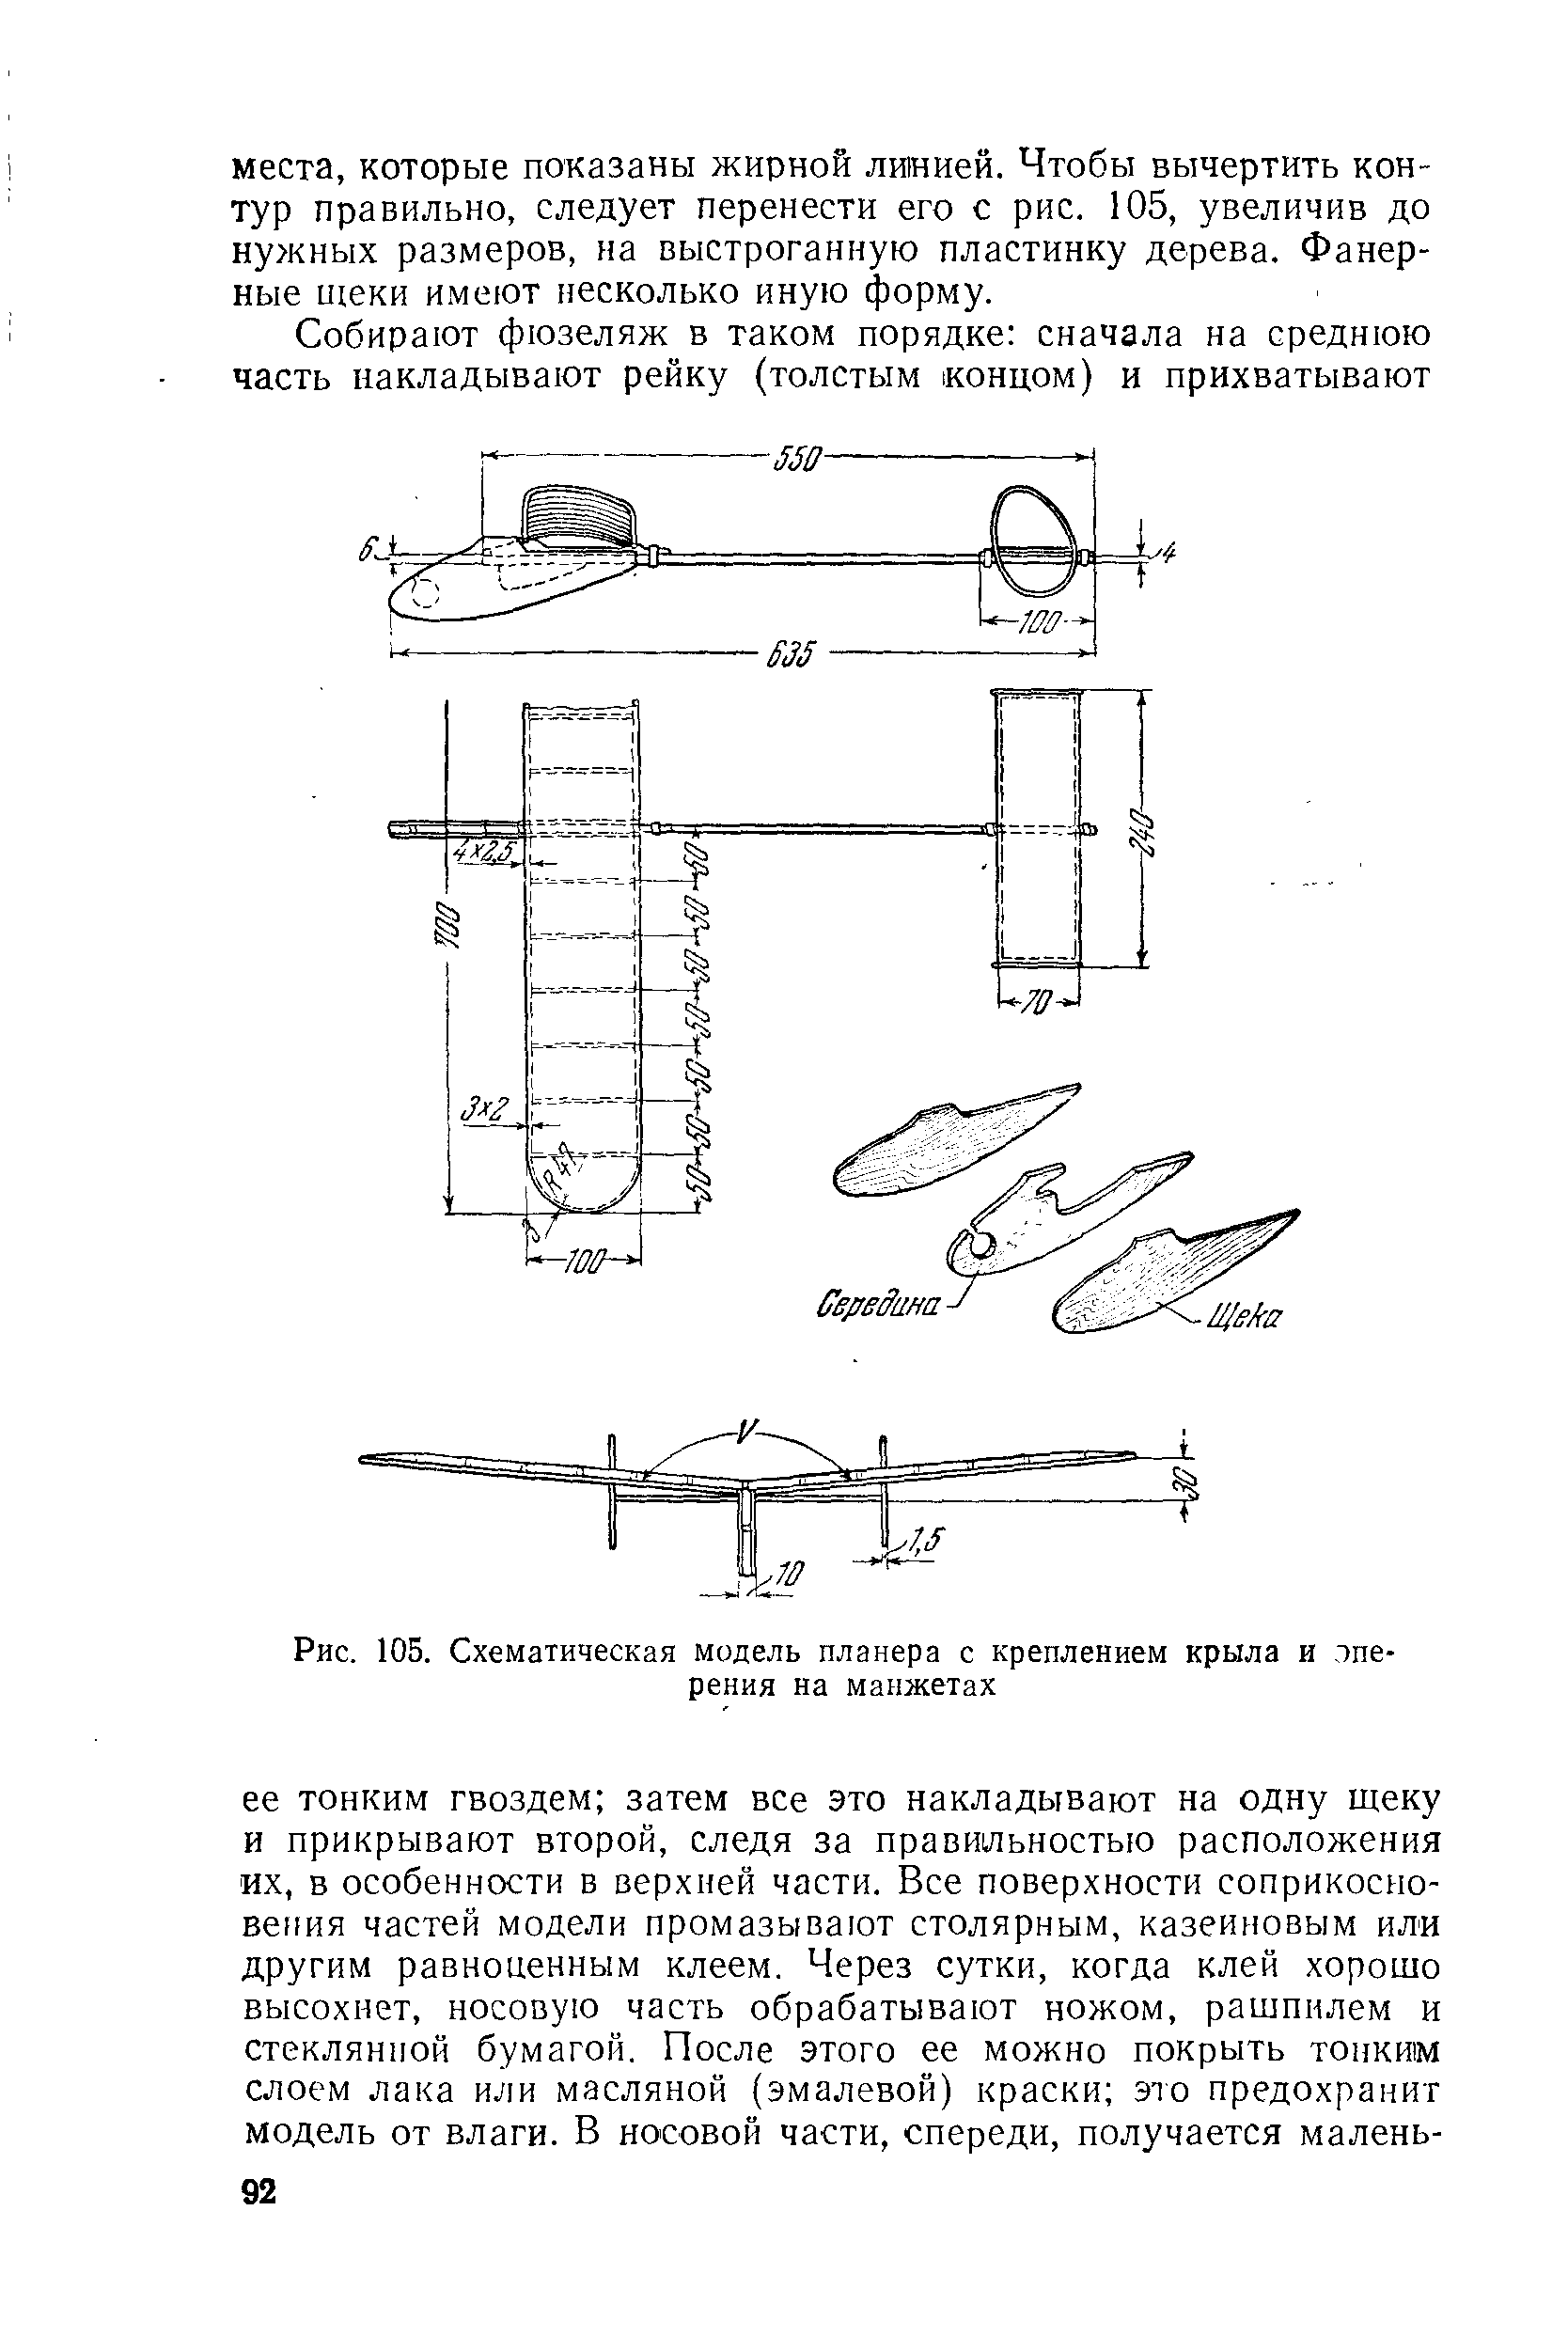 Рис. 105. Схематическая модель планера с креплением крыла и лпе-рения на манжетах
